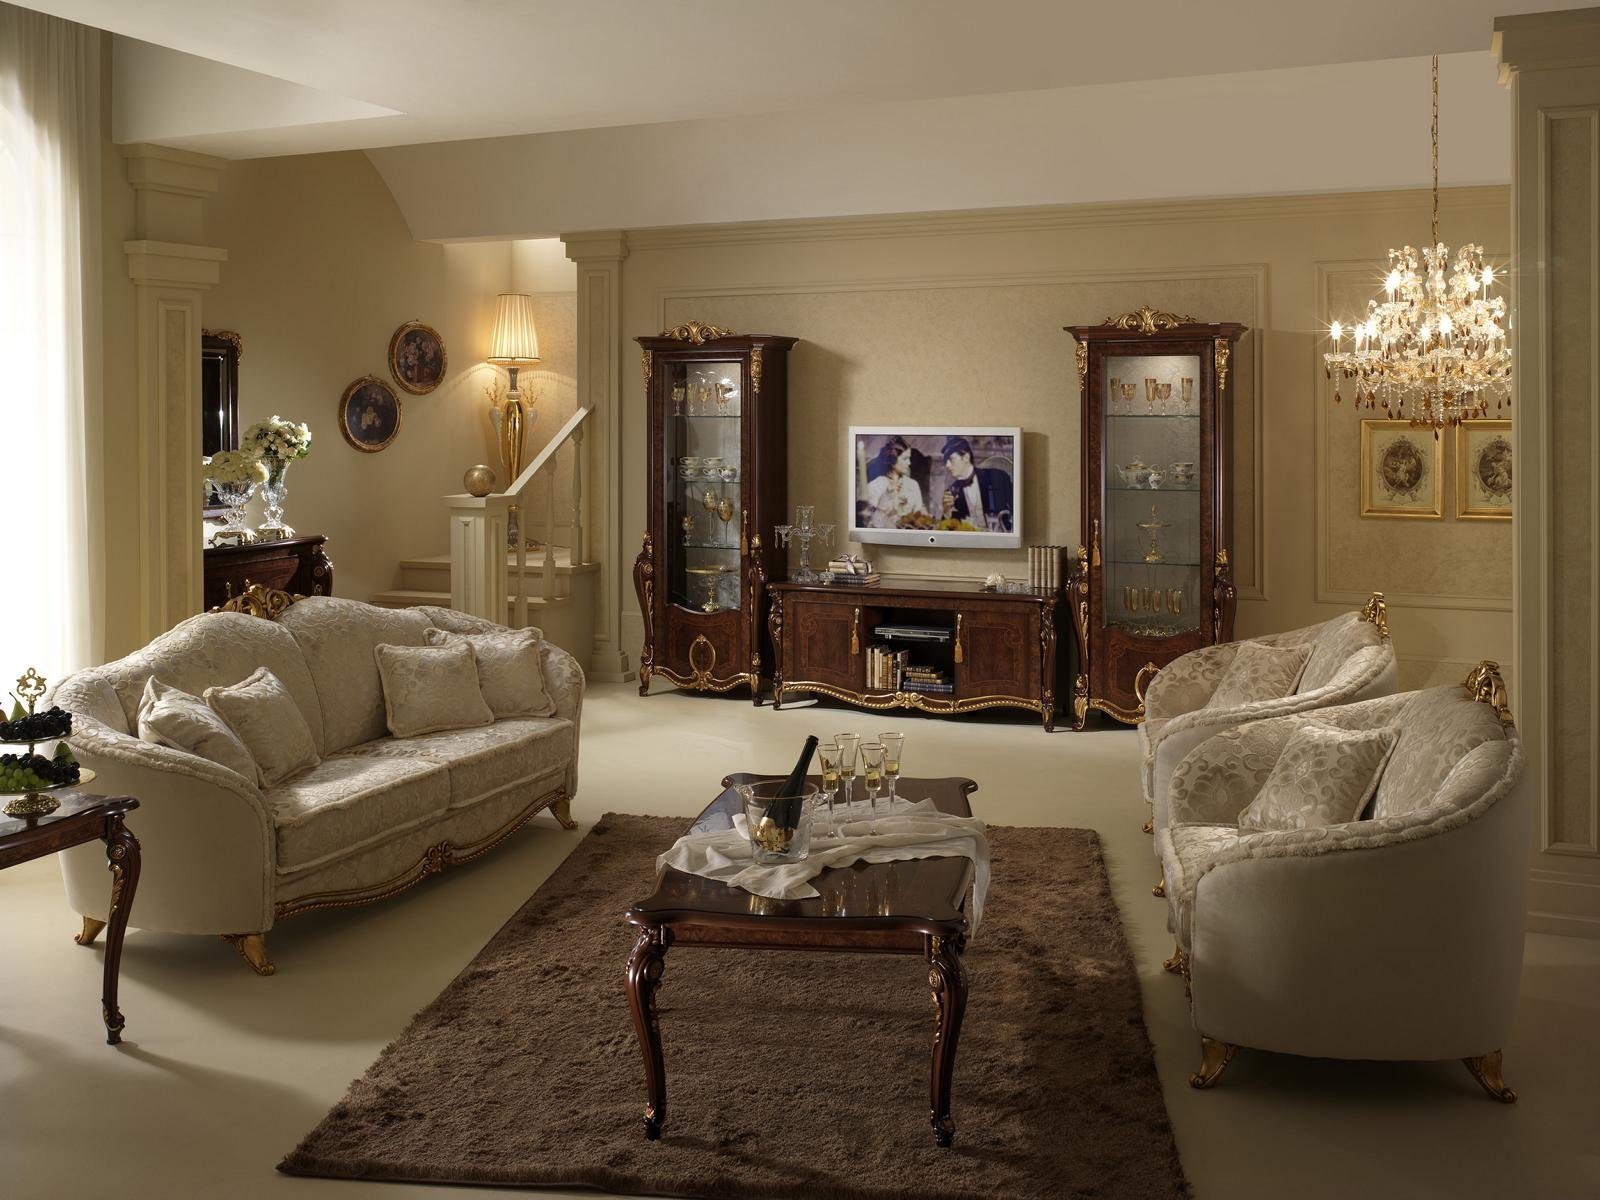 Italienische 3+1 Möbel Neu Klasse arredoclassic™ Couch Sofagarnitur Sofa Wohnzimmer-Set, JVmoebel Luxus